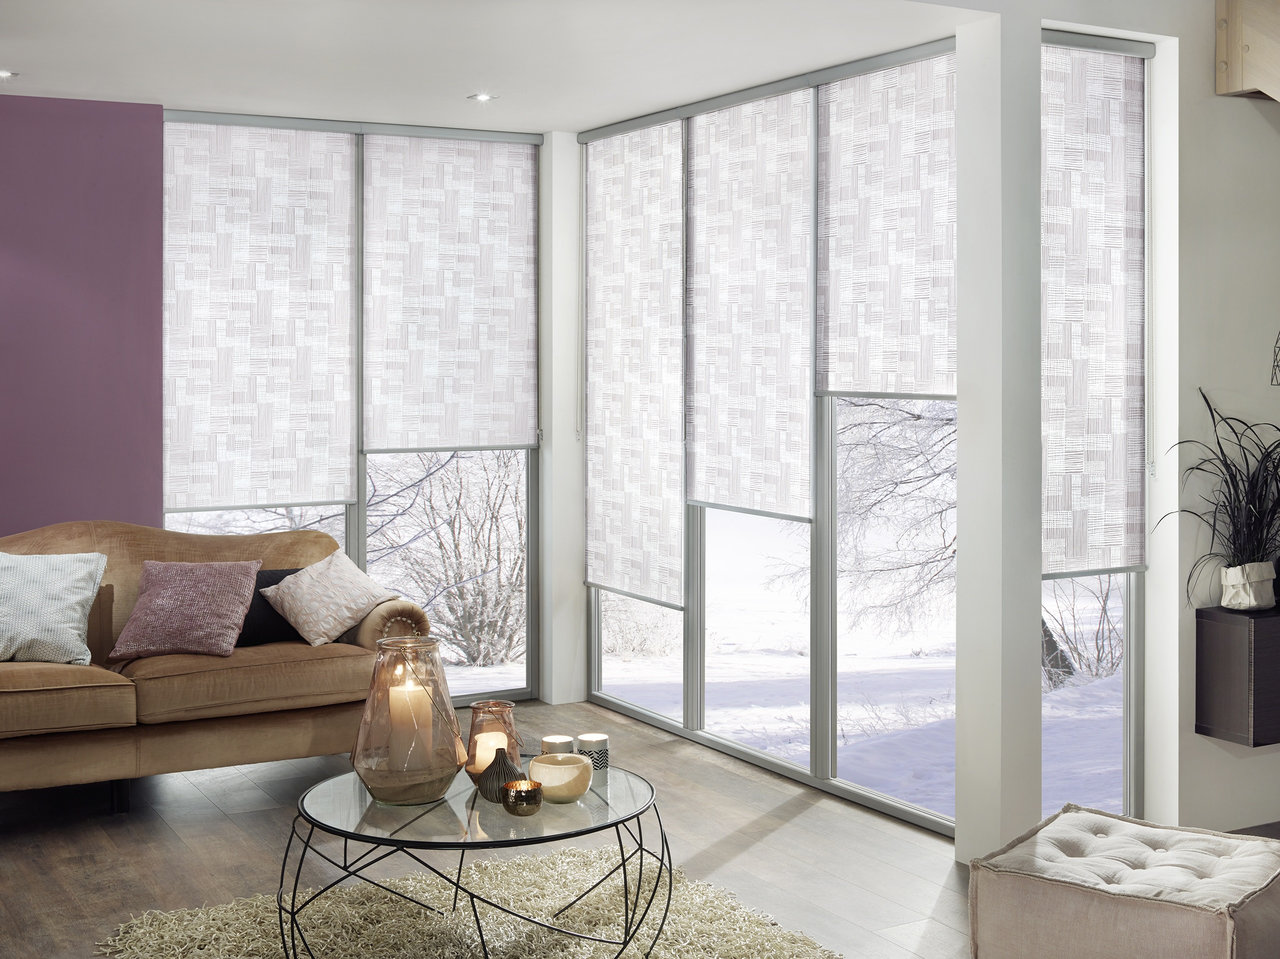 Blendschutz, Sonnenschutz, und Sichtschutz, Dachfenster - nice price - auch deco für Rollos Abdunklung